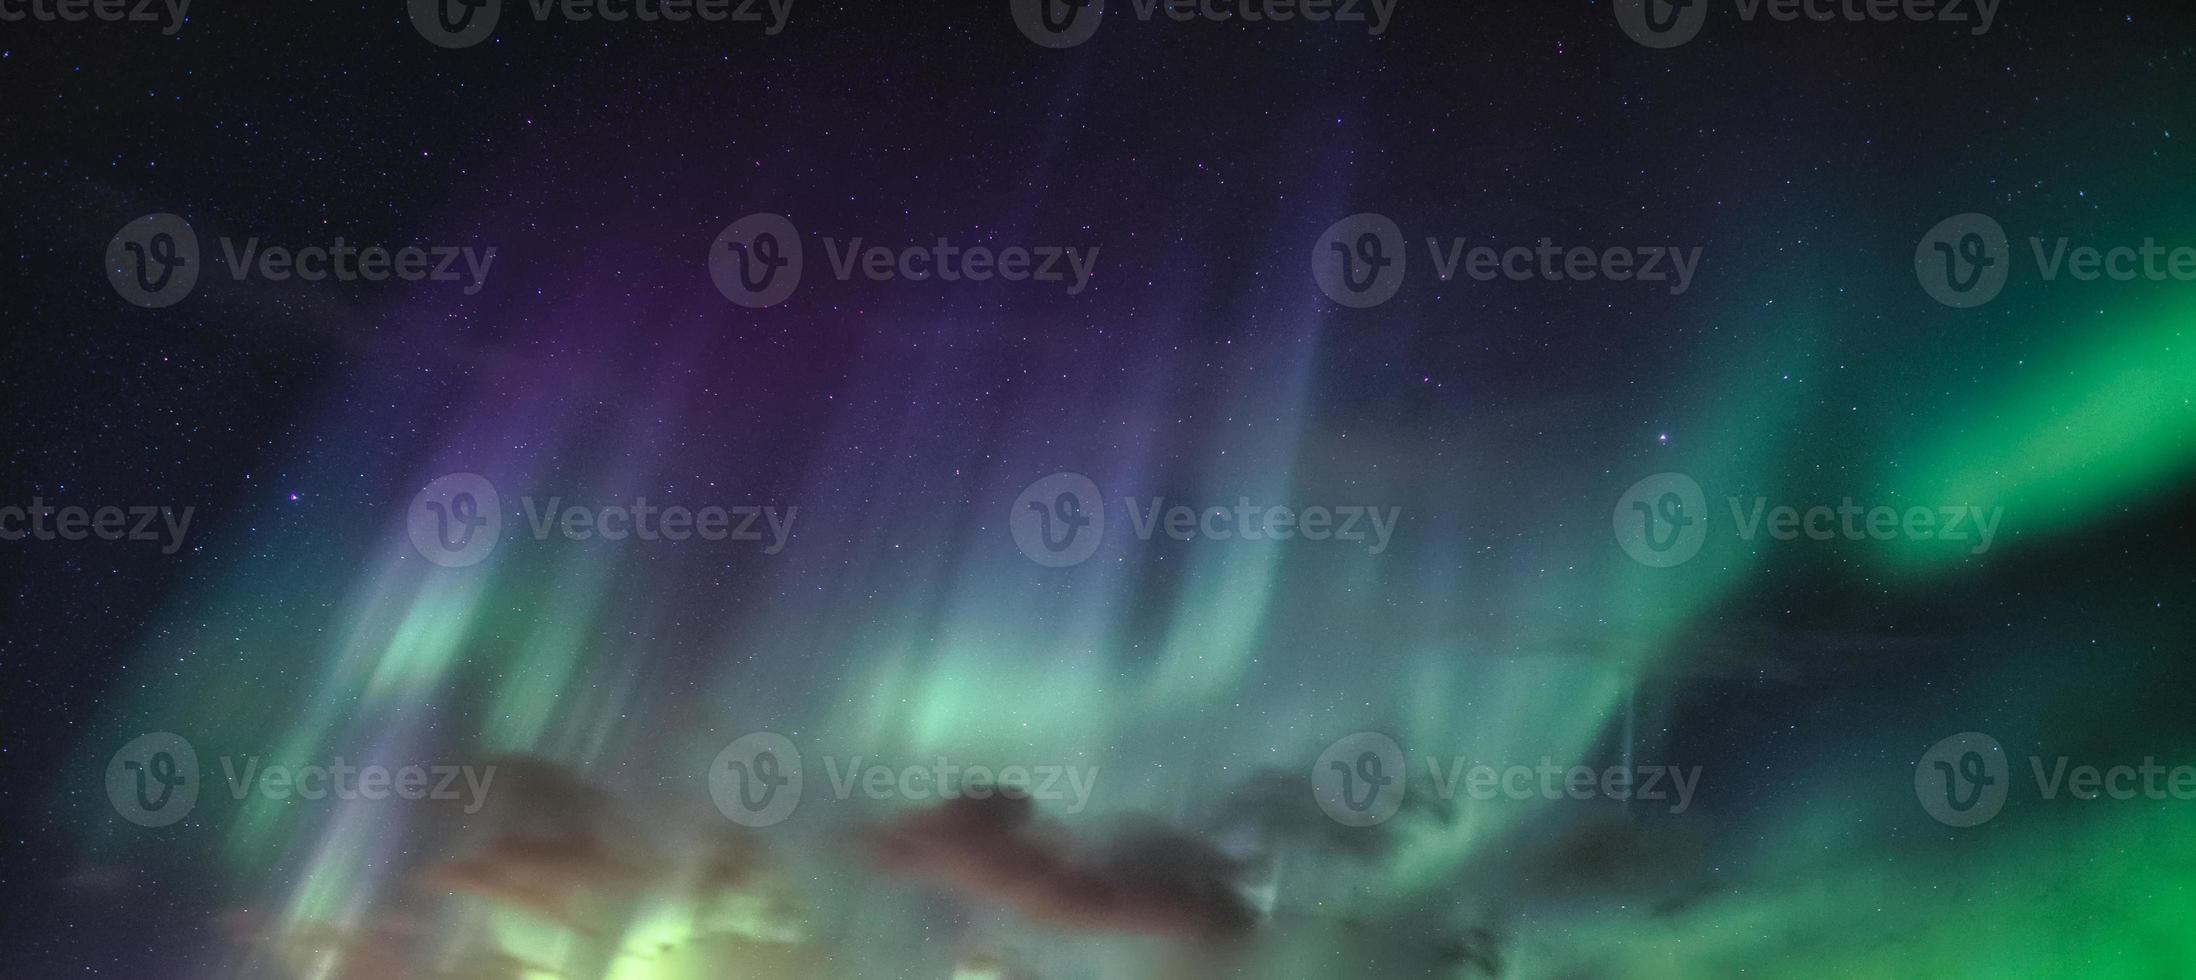 aurora boreal, aurora boreal com estrelas no céu noturno no círculo ártico foto